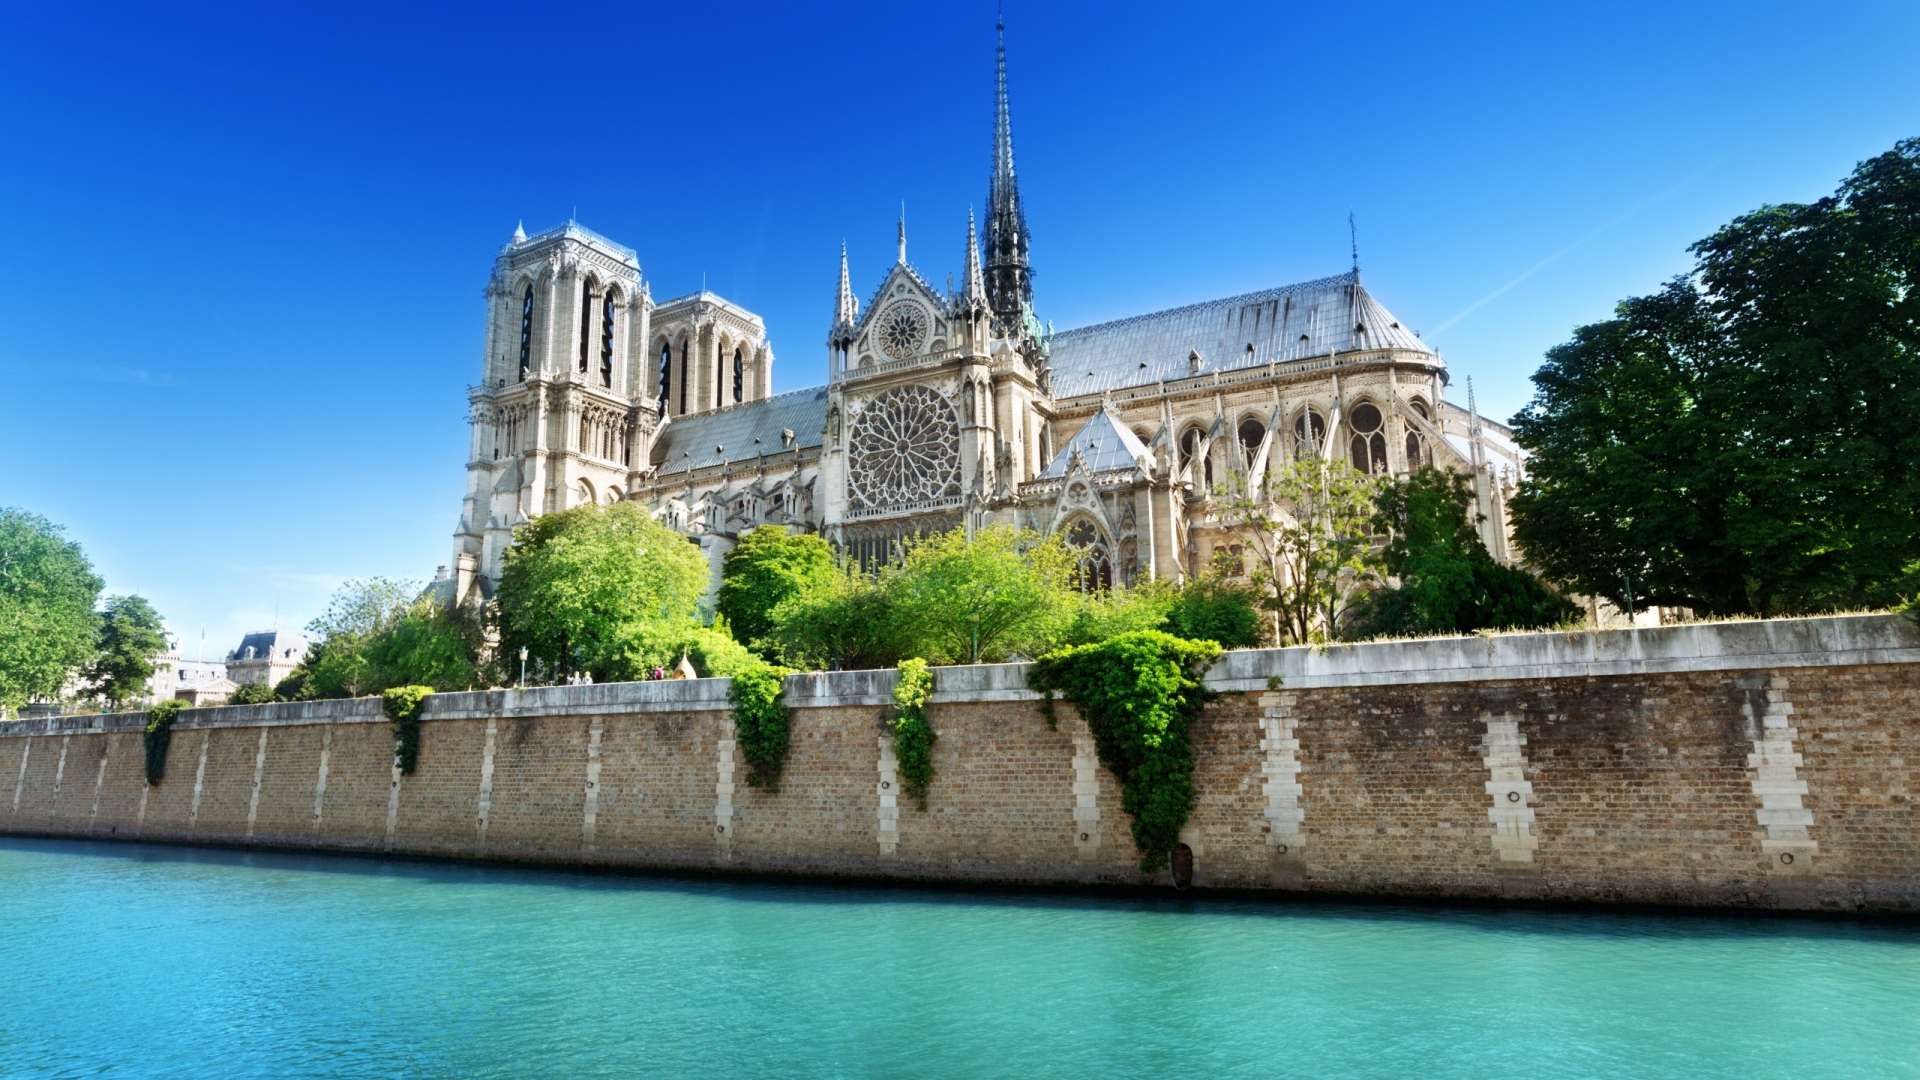 Notre Dame de Paris Side View for 1920 x 1080 HDTV 1080p resolution